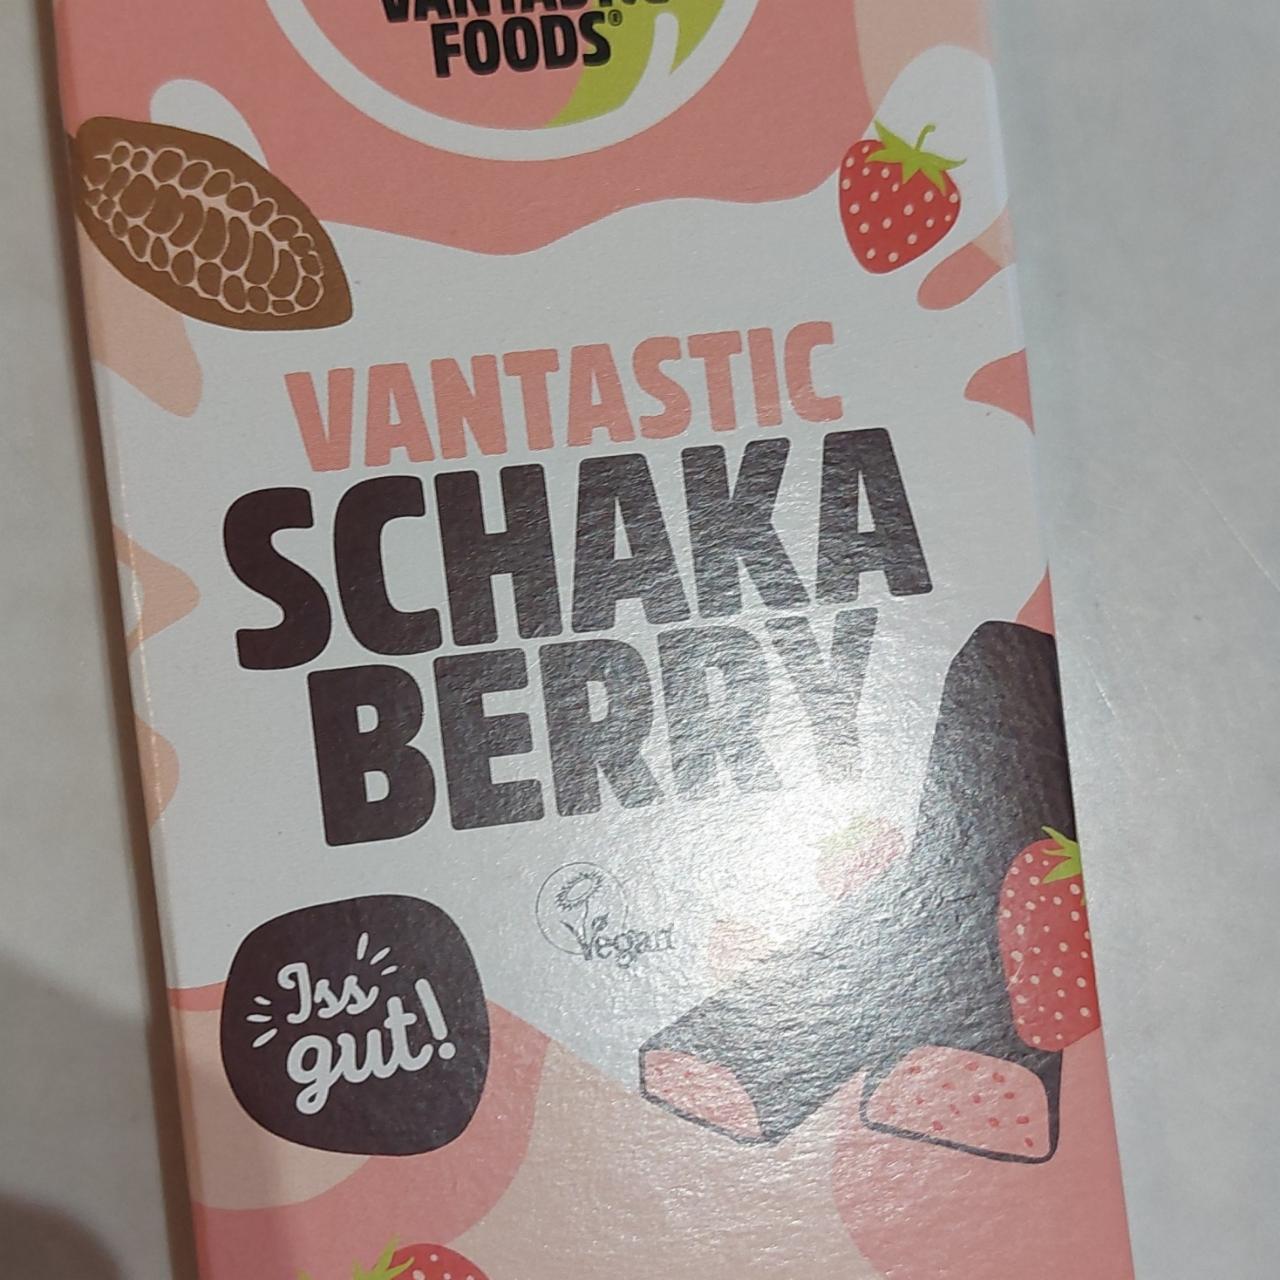 Фото - шоколад с клубничной начинкой VANTASTIC SCHAKA BERRY Vantastic Foods